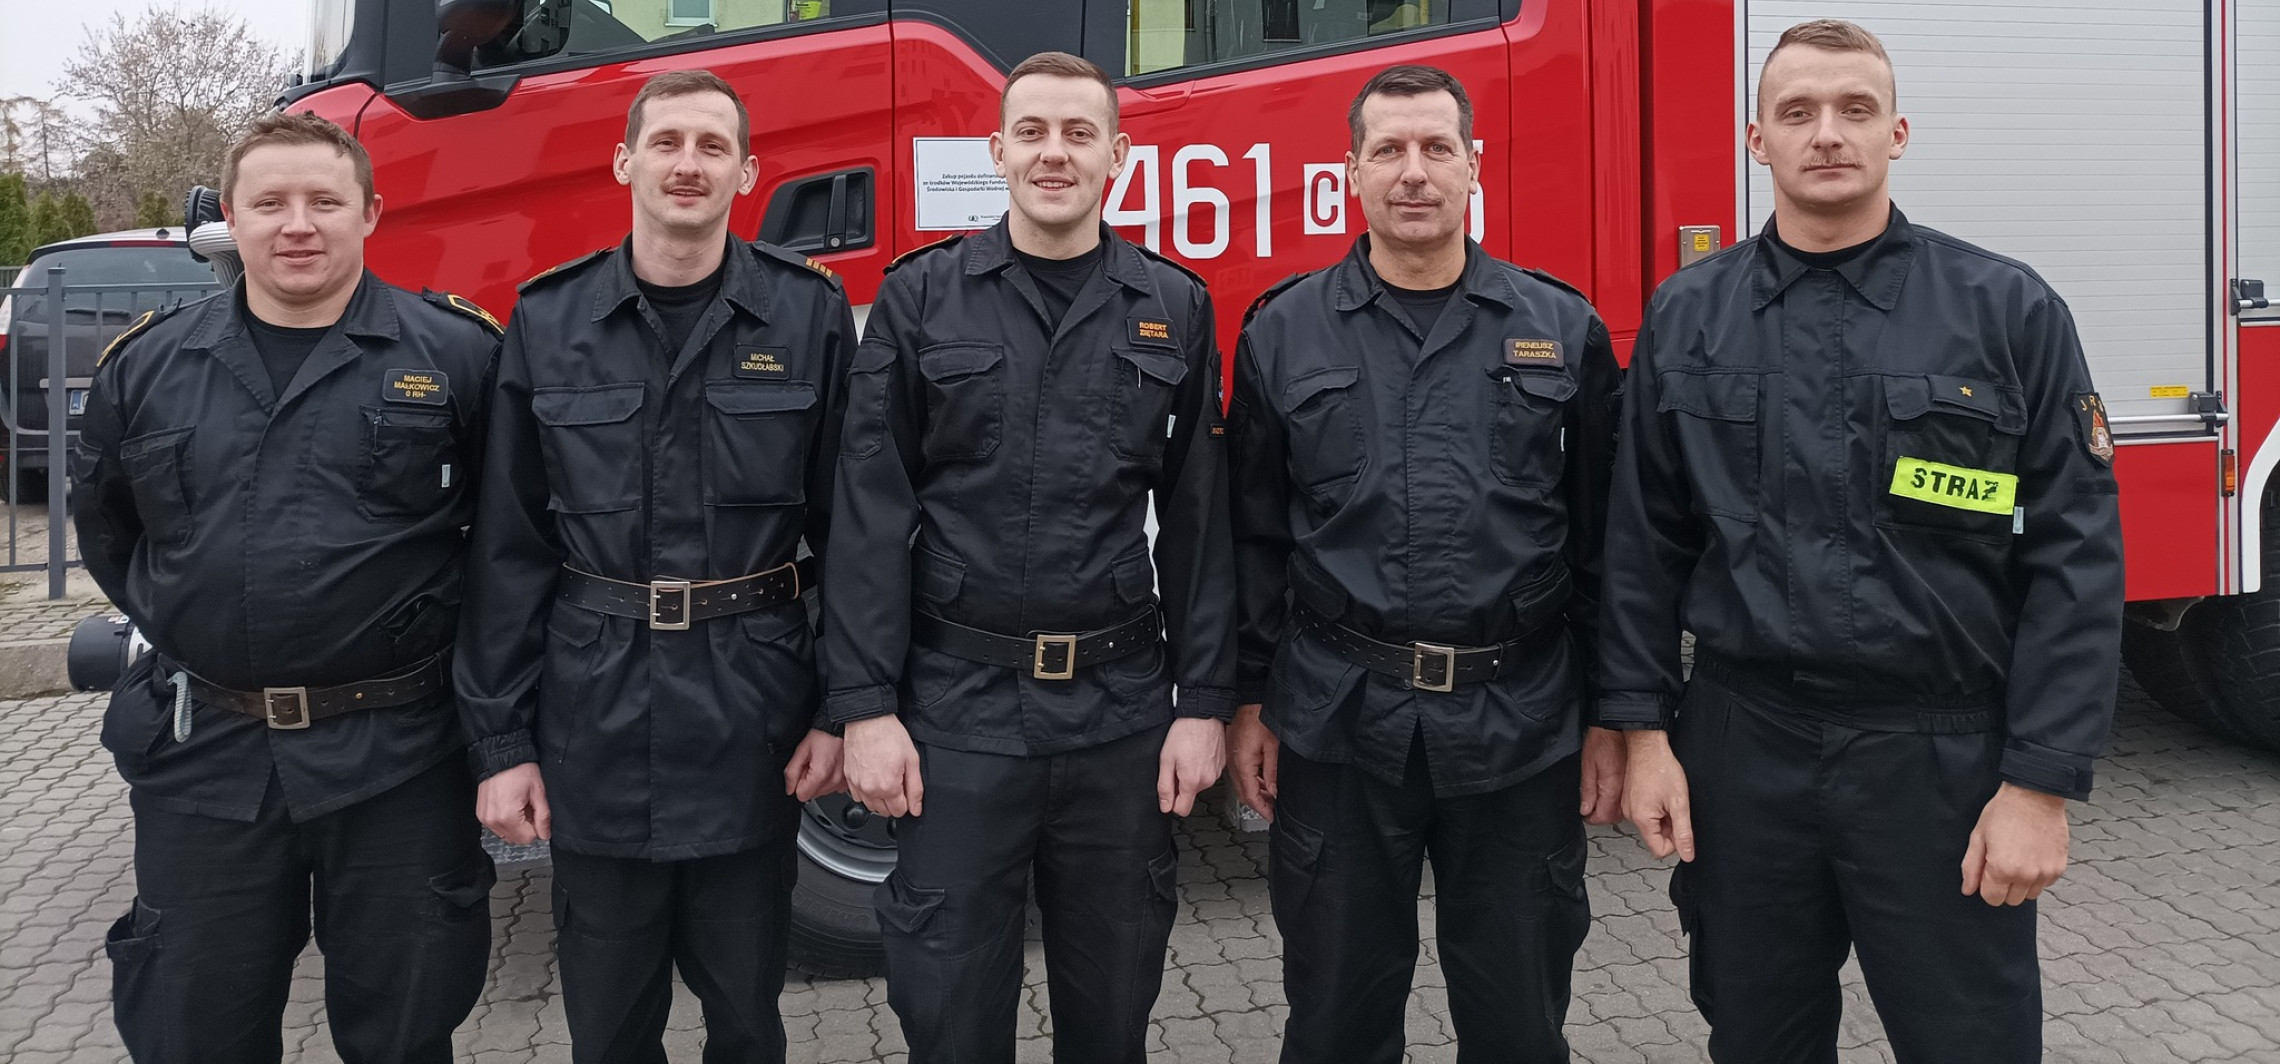 Inowrocław - Inowrocławscy strażacy zapuścili wąsy. Skąd taka moda?